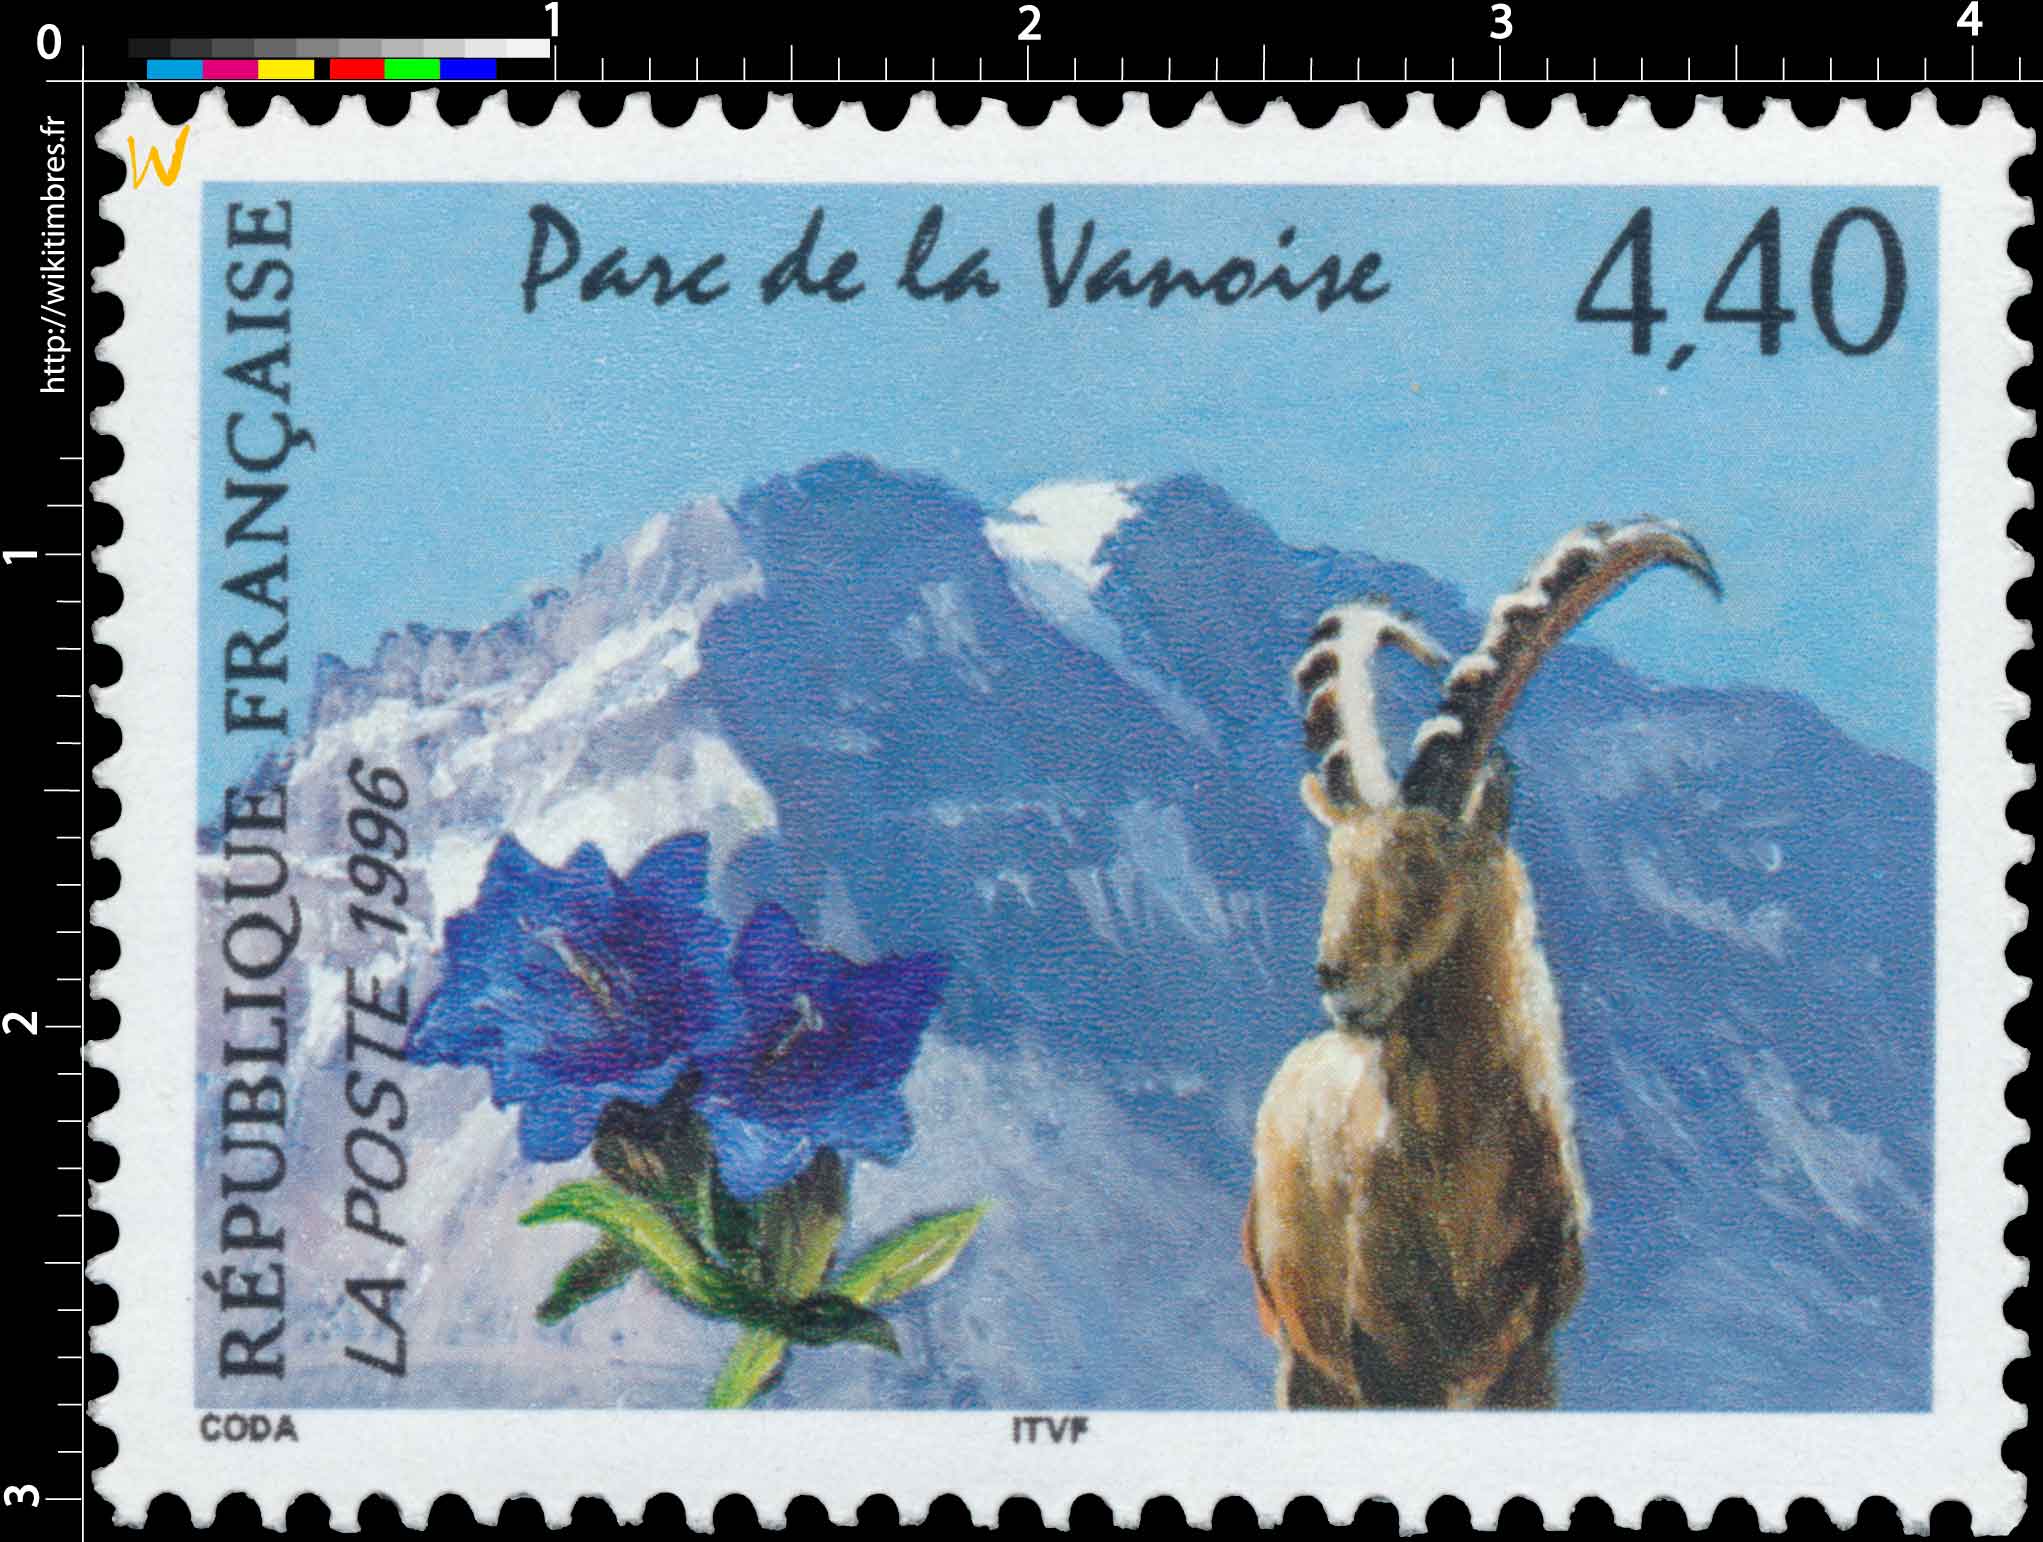 1996 Parc de la Vanoise